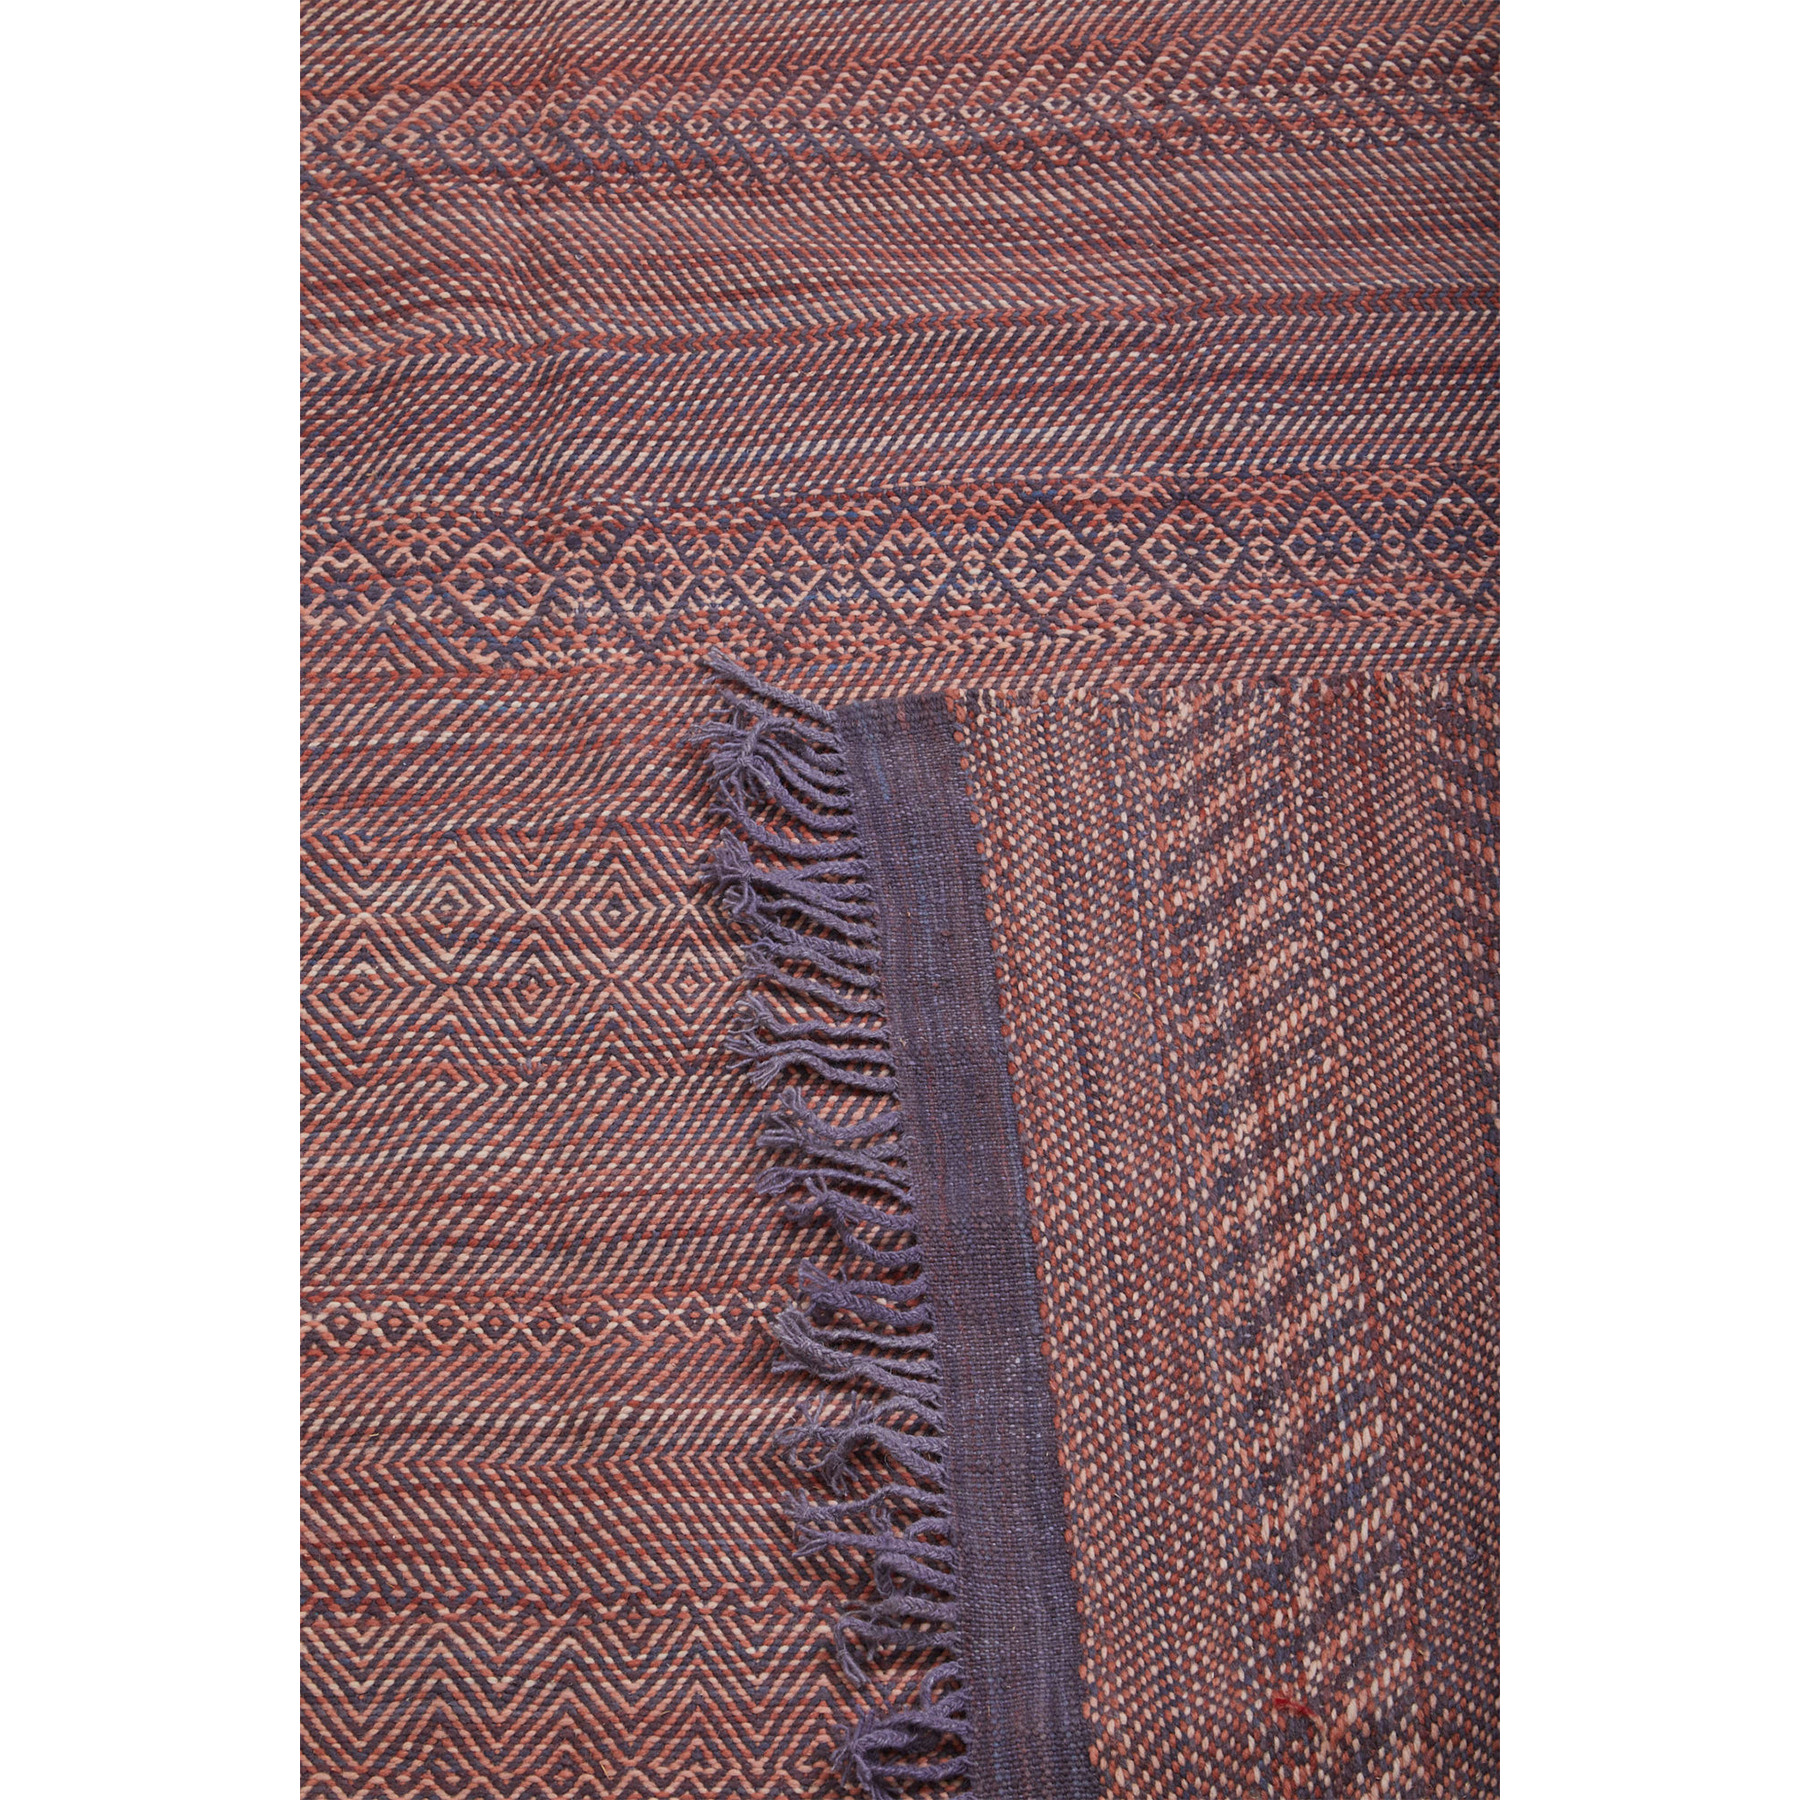 Purple fringe on Moroccan flatweave kilim